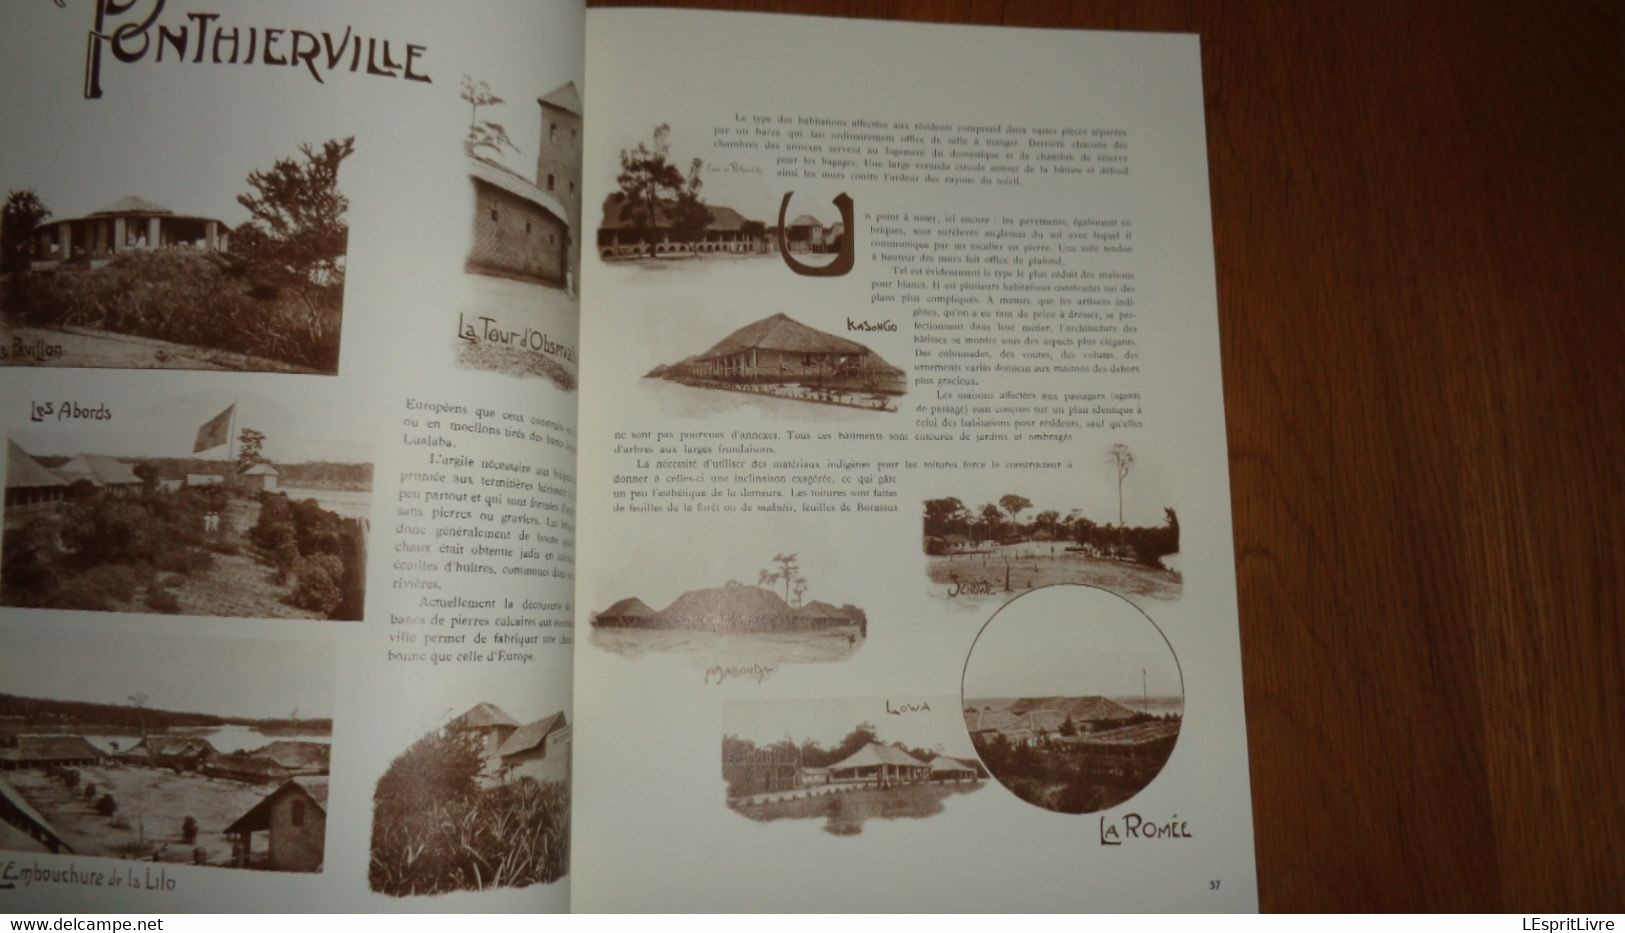 NAISSANCE DU CONGO BELGE 1500 Photos d'Epoque sur le Pays et de ses Habitants 1903 1904 Colonie Afrique Jésuite Port